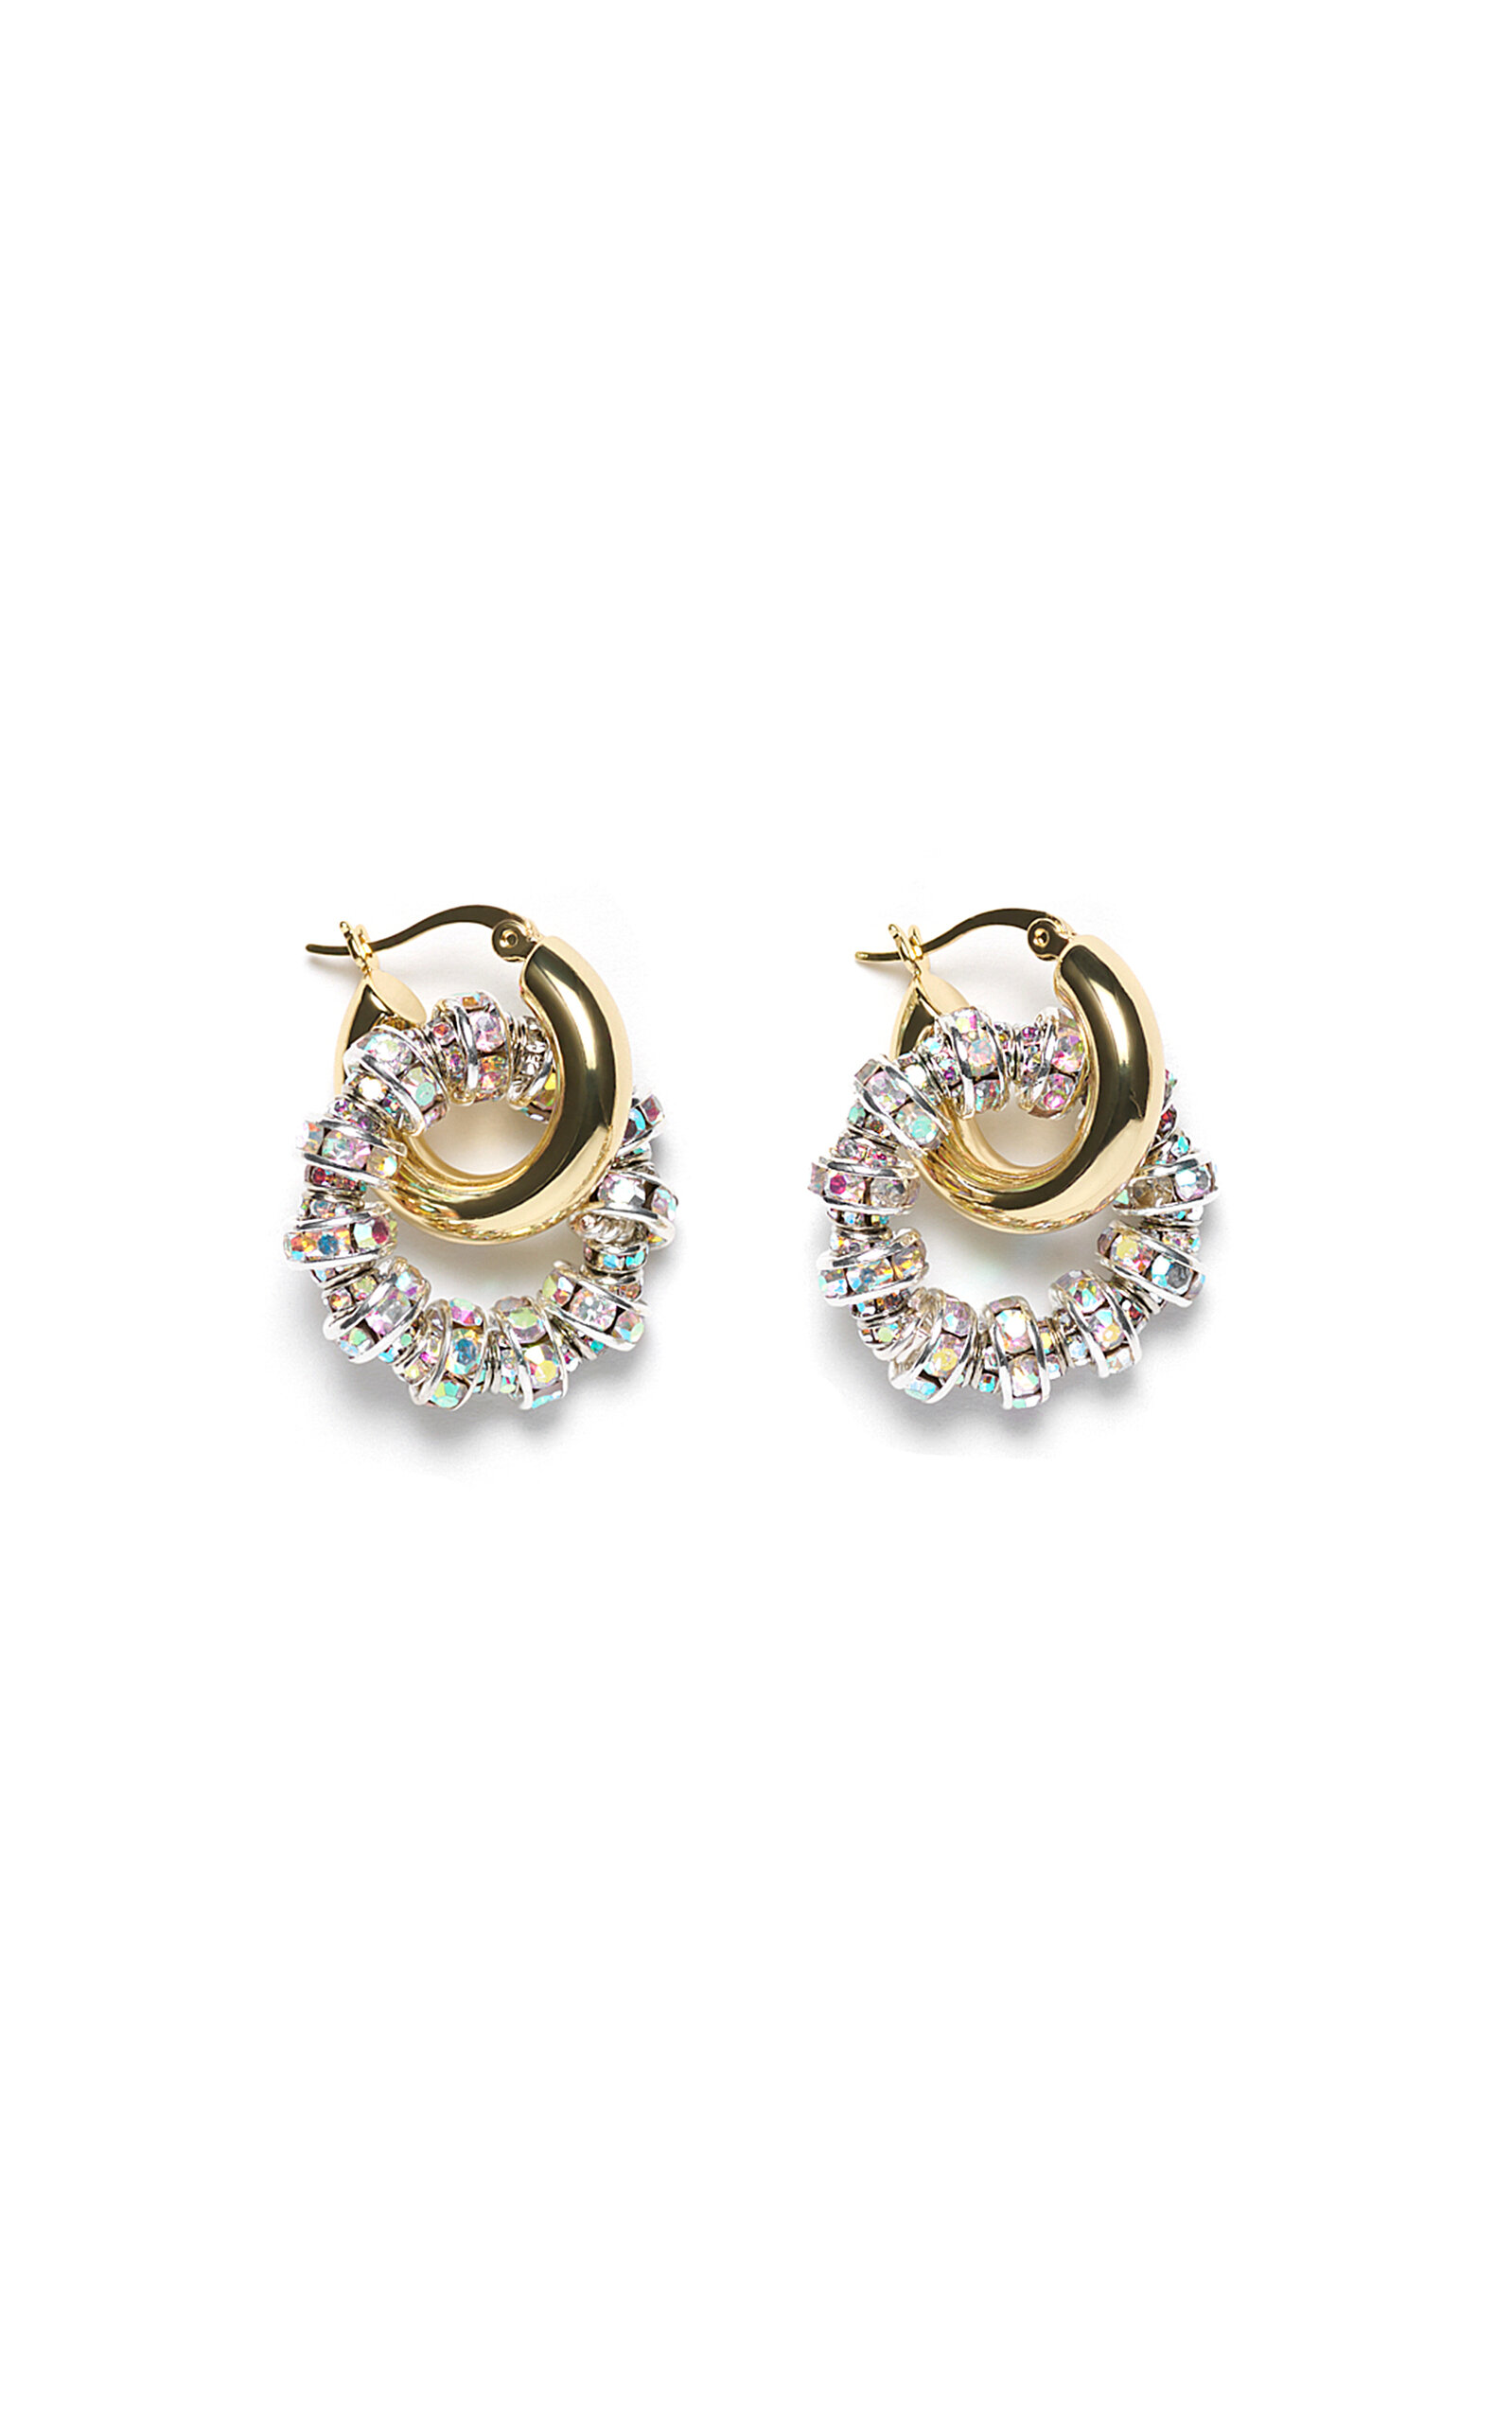 Les Créoles Petites 14k Gold-Plated Earrings